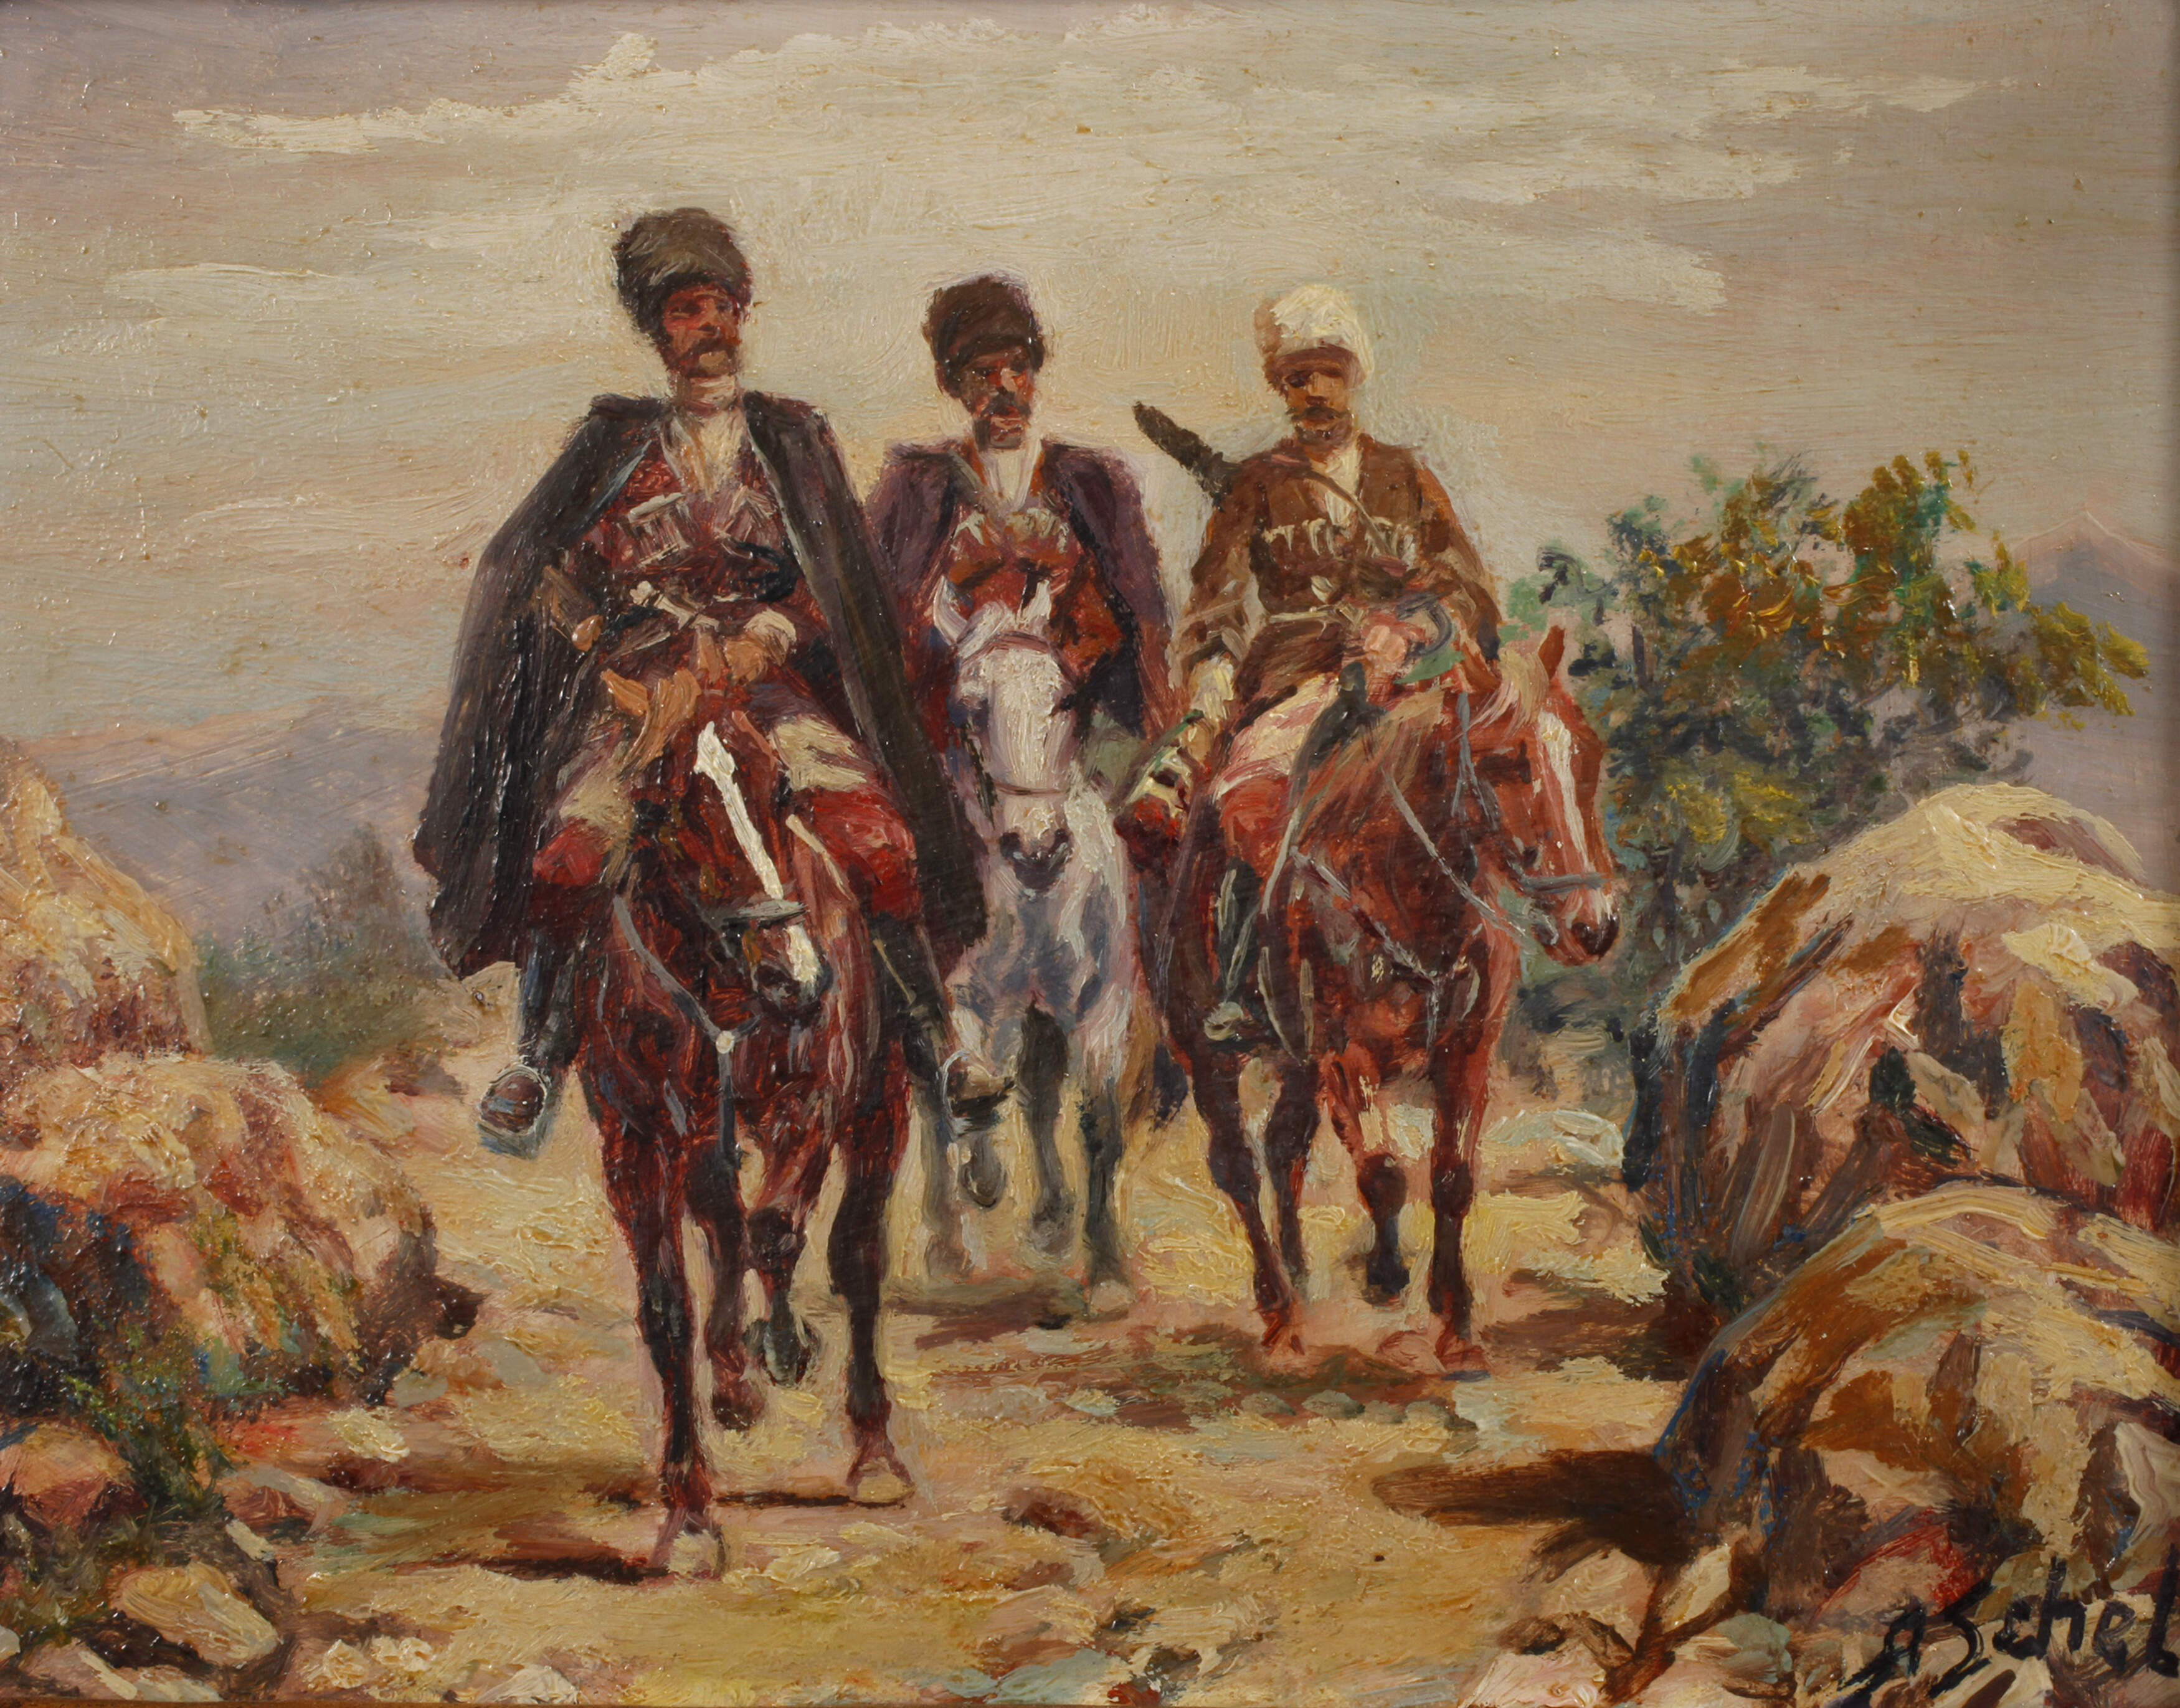 Afranasij Ivanovic Scheloumoff, Kosaken zu Pferd